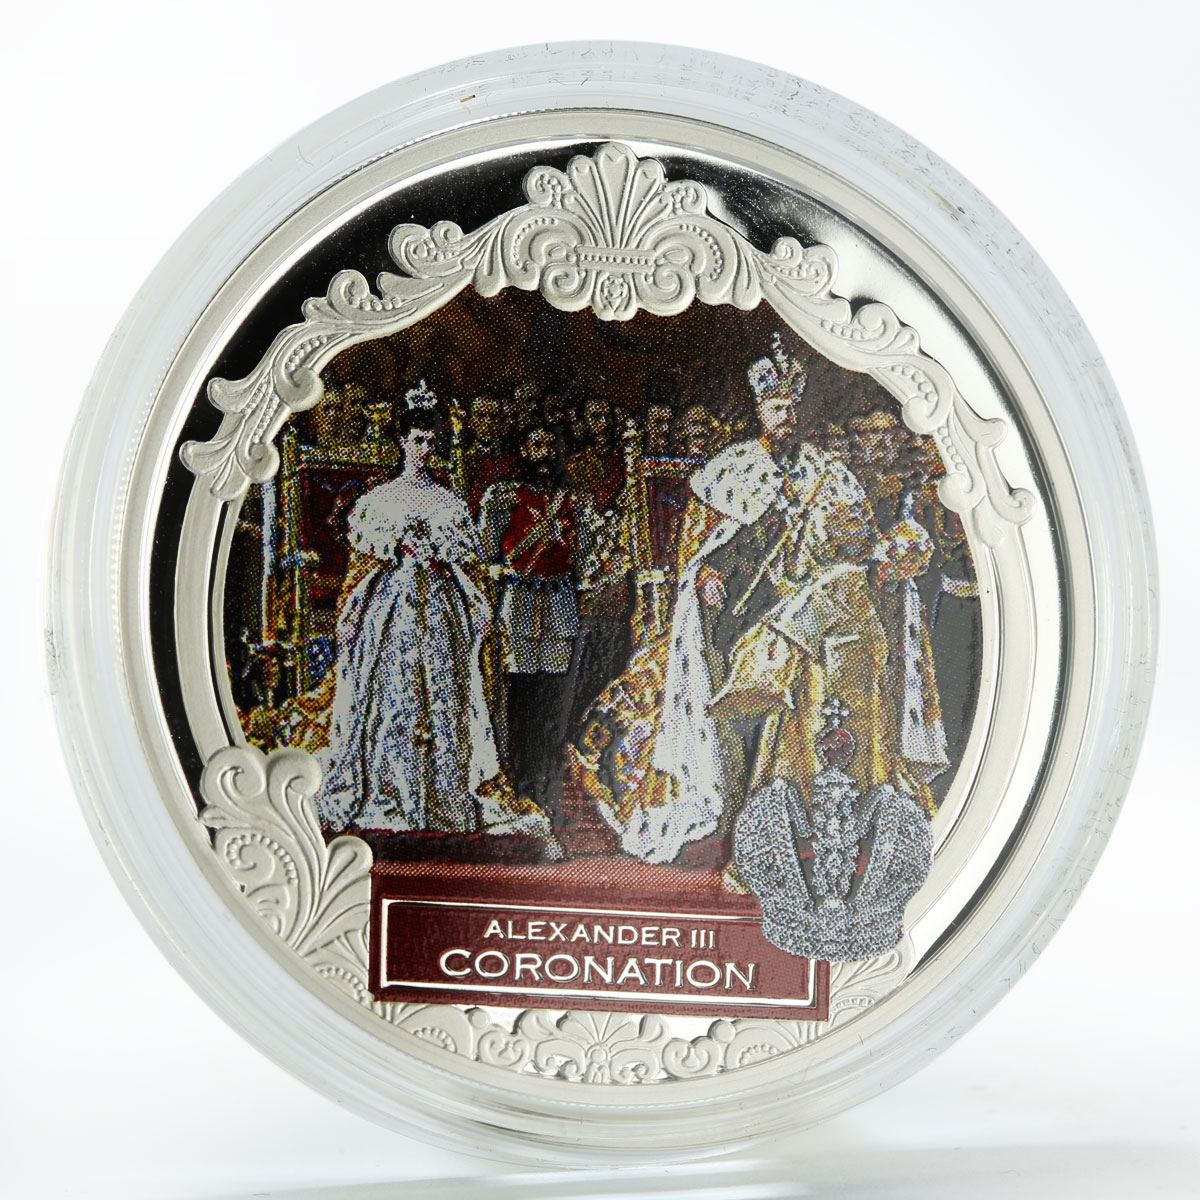 Fiji 2 dollars, a set of 3 coins Alexander III, Romanov family, silver coin 2012